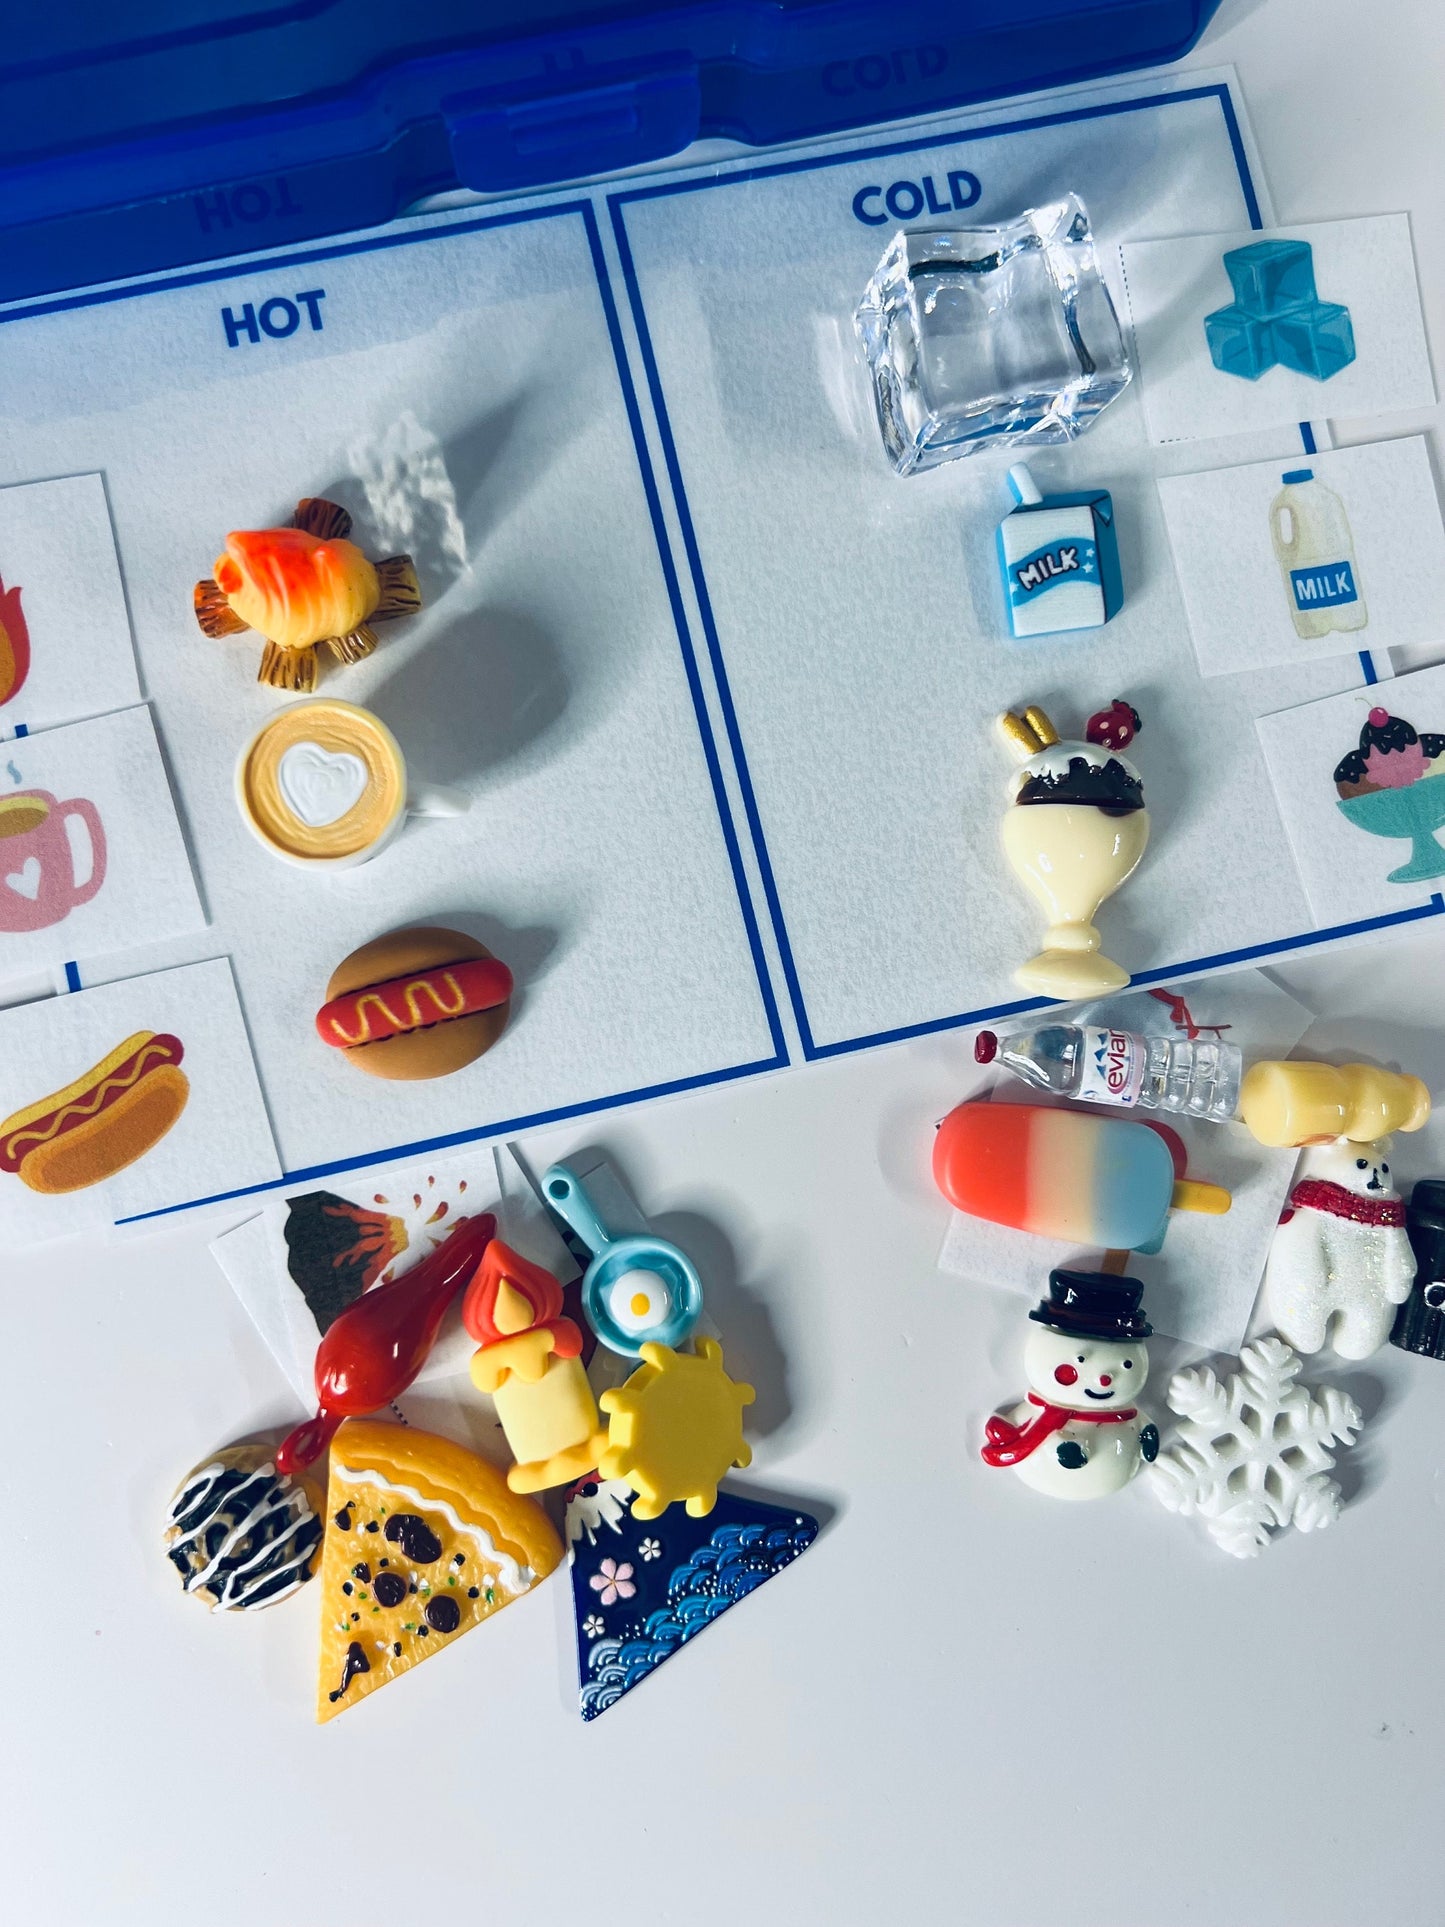 TEMPERATURE Preschool SCIENCE Sort Hot Cold Task Box avec mini objets et images - Objets miniatures - Boîte de tâches d’orthophonie